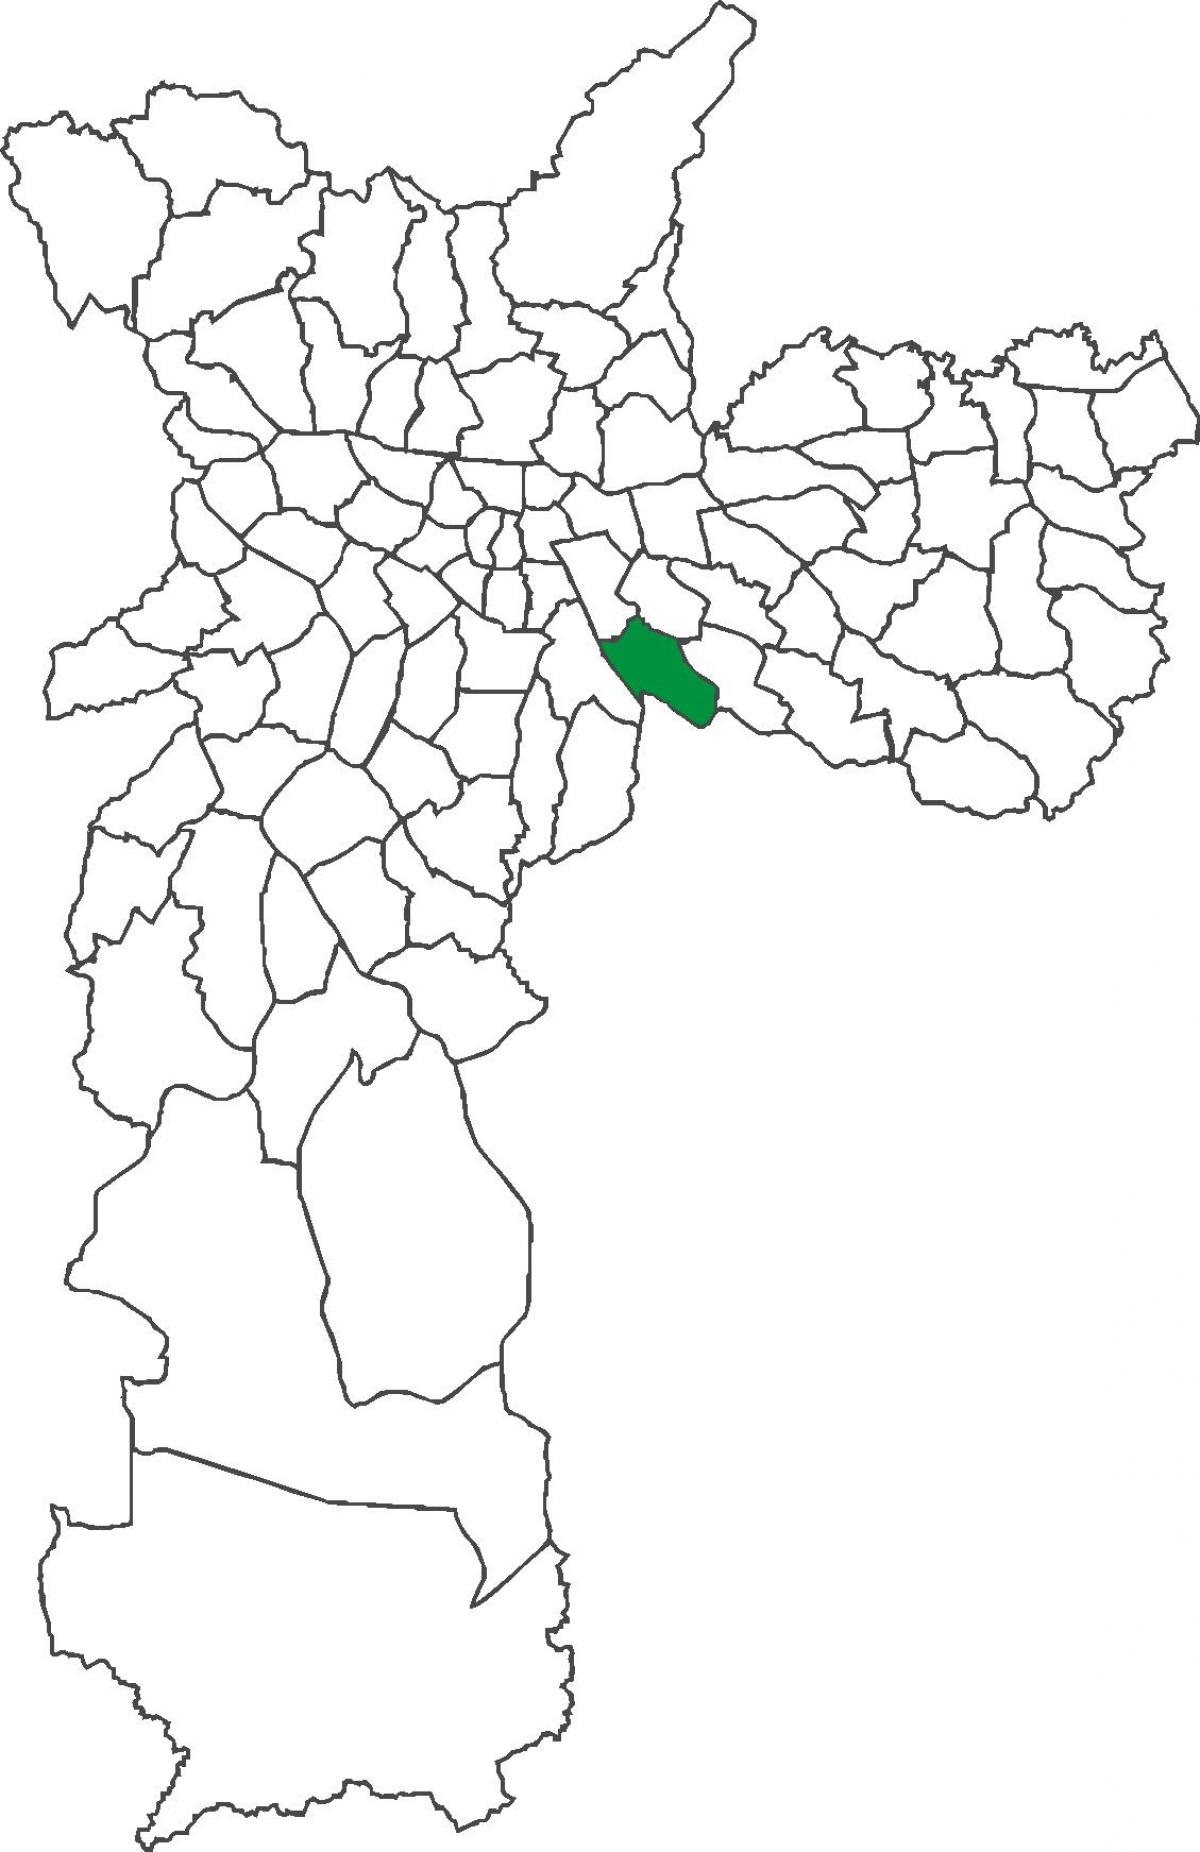 નકશો Vila Prudente જિલ્લા